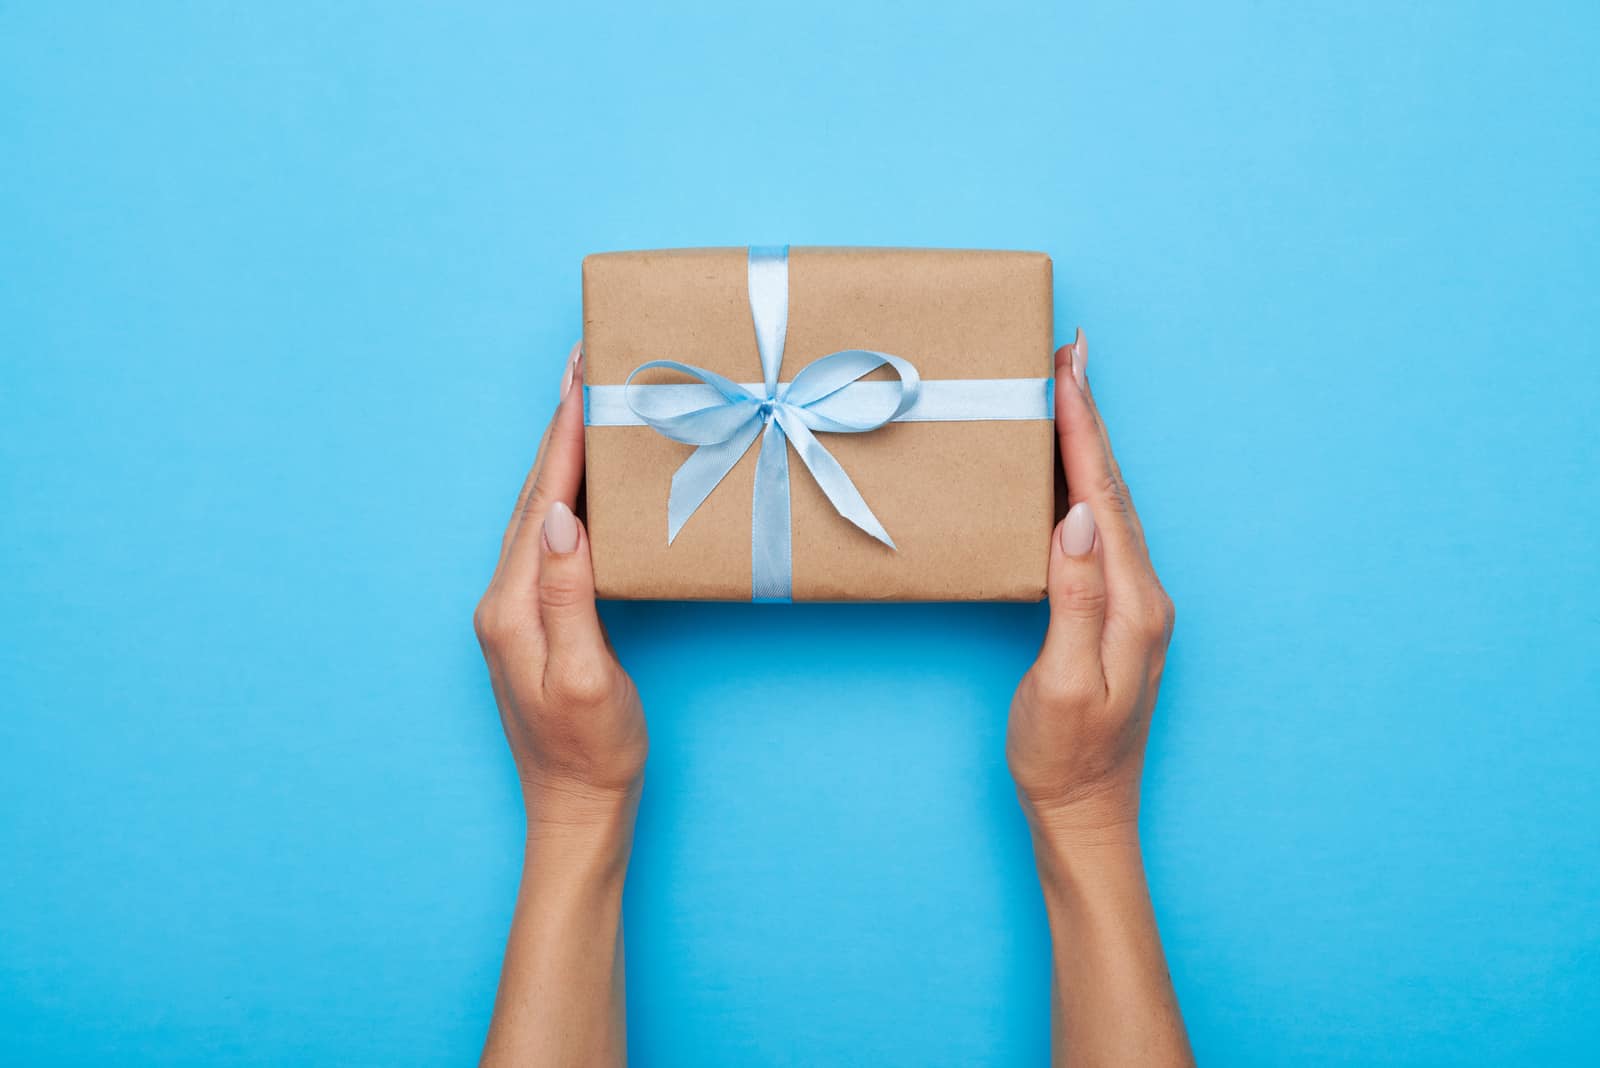 Frauenhände halten Geschenk verpackt und verziert mit Bogen auf blauem Hintergrund